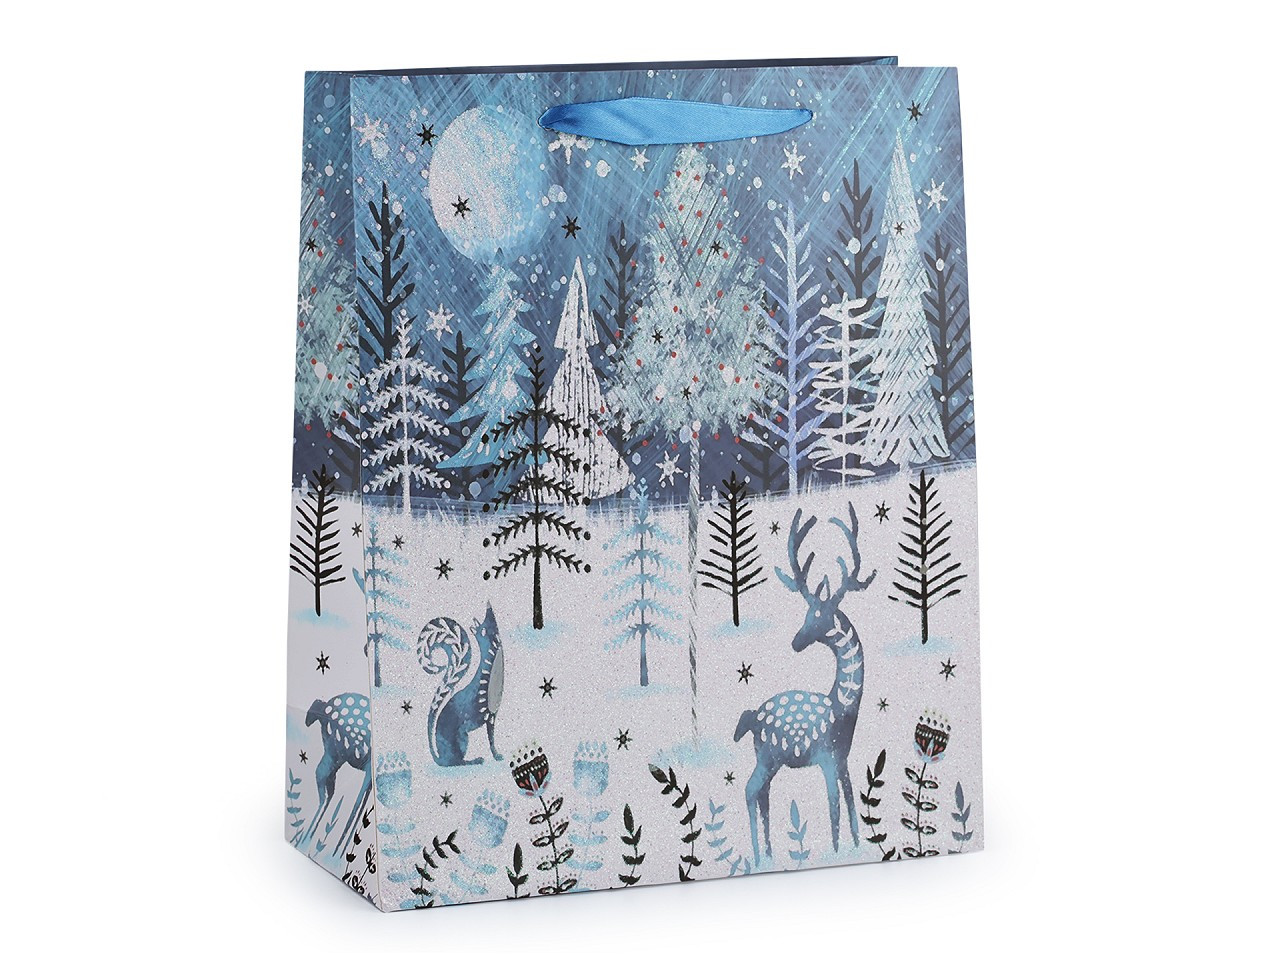 Dárková taška vánoční s glitry, barva 3 modrá ledová